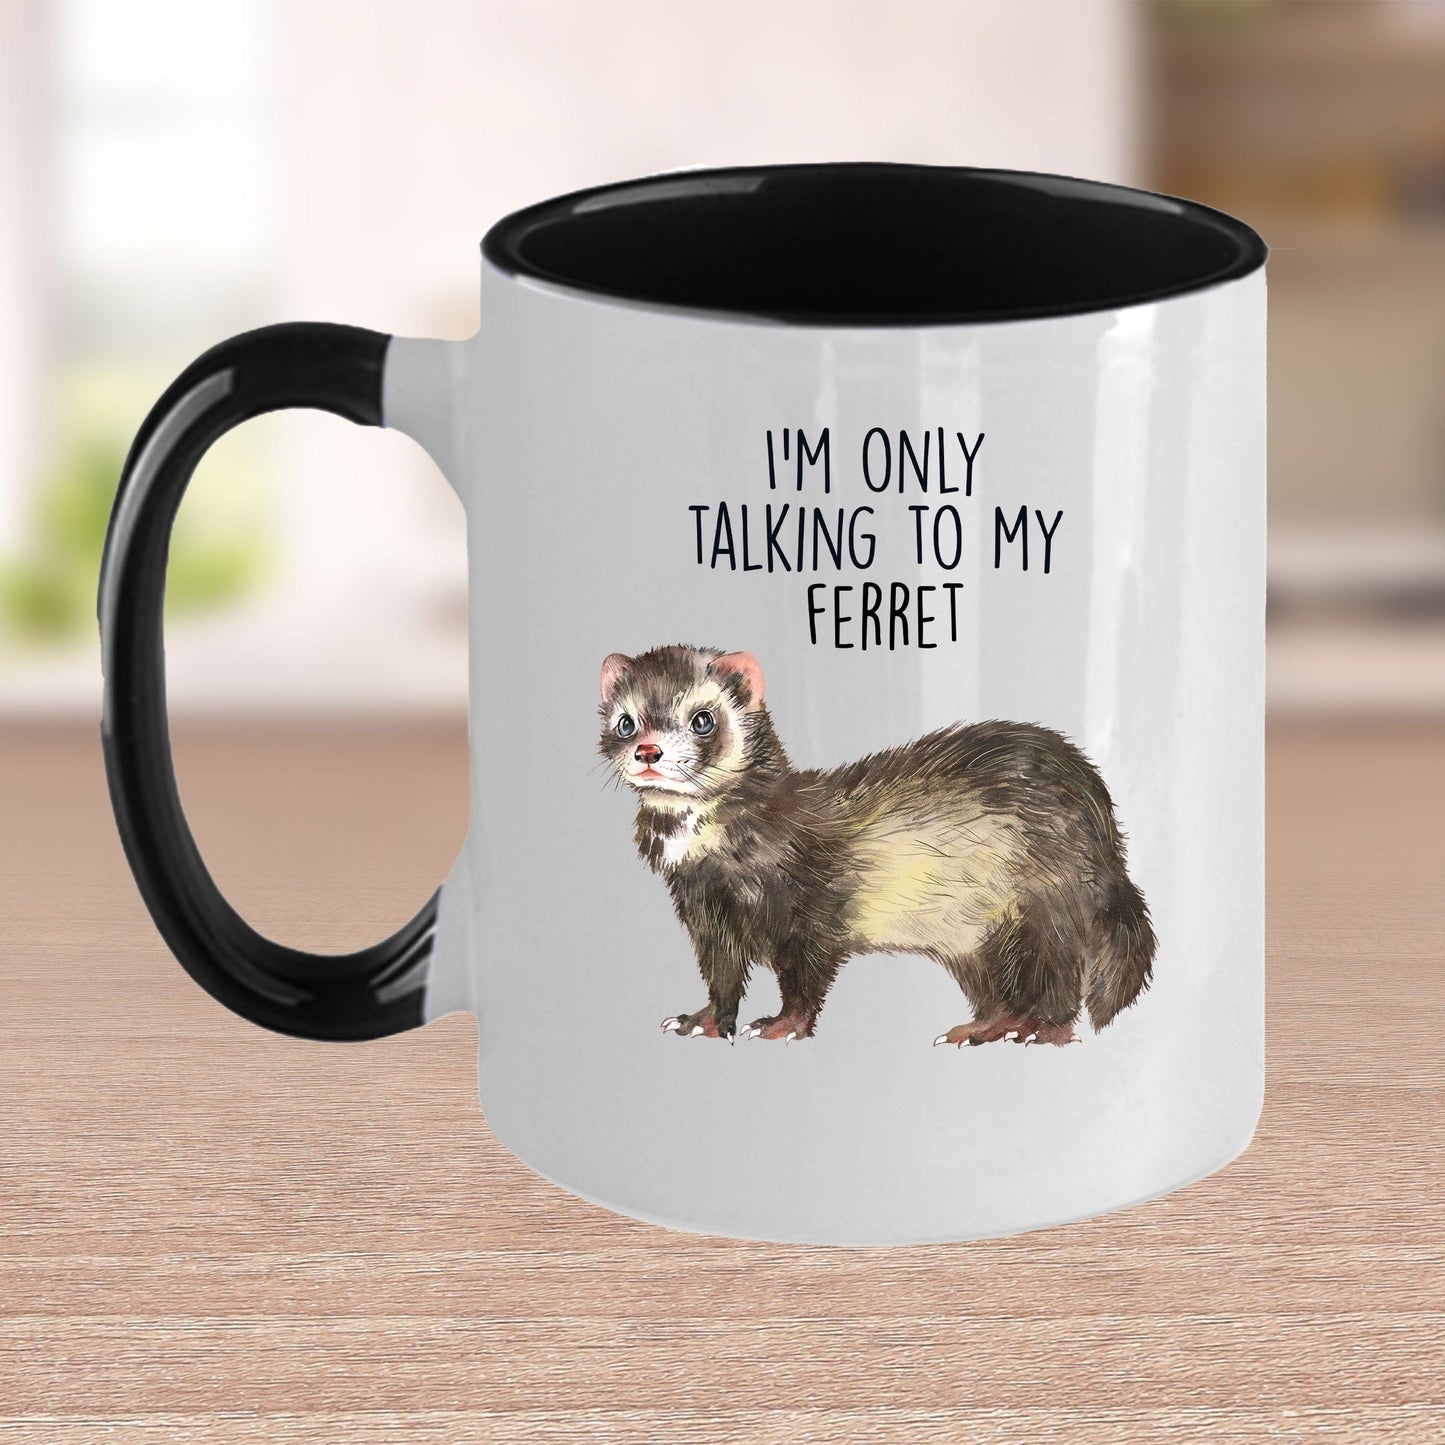 Funny Ferret Custom Ceramic Coffee Mug - I'm Only Talking To My Ferret